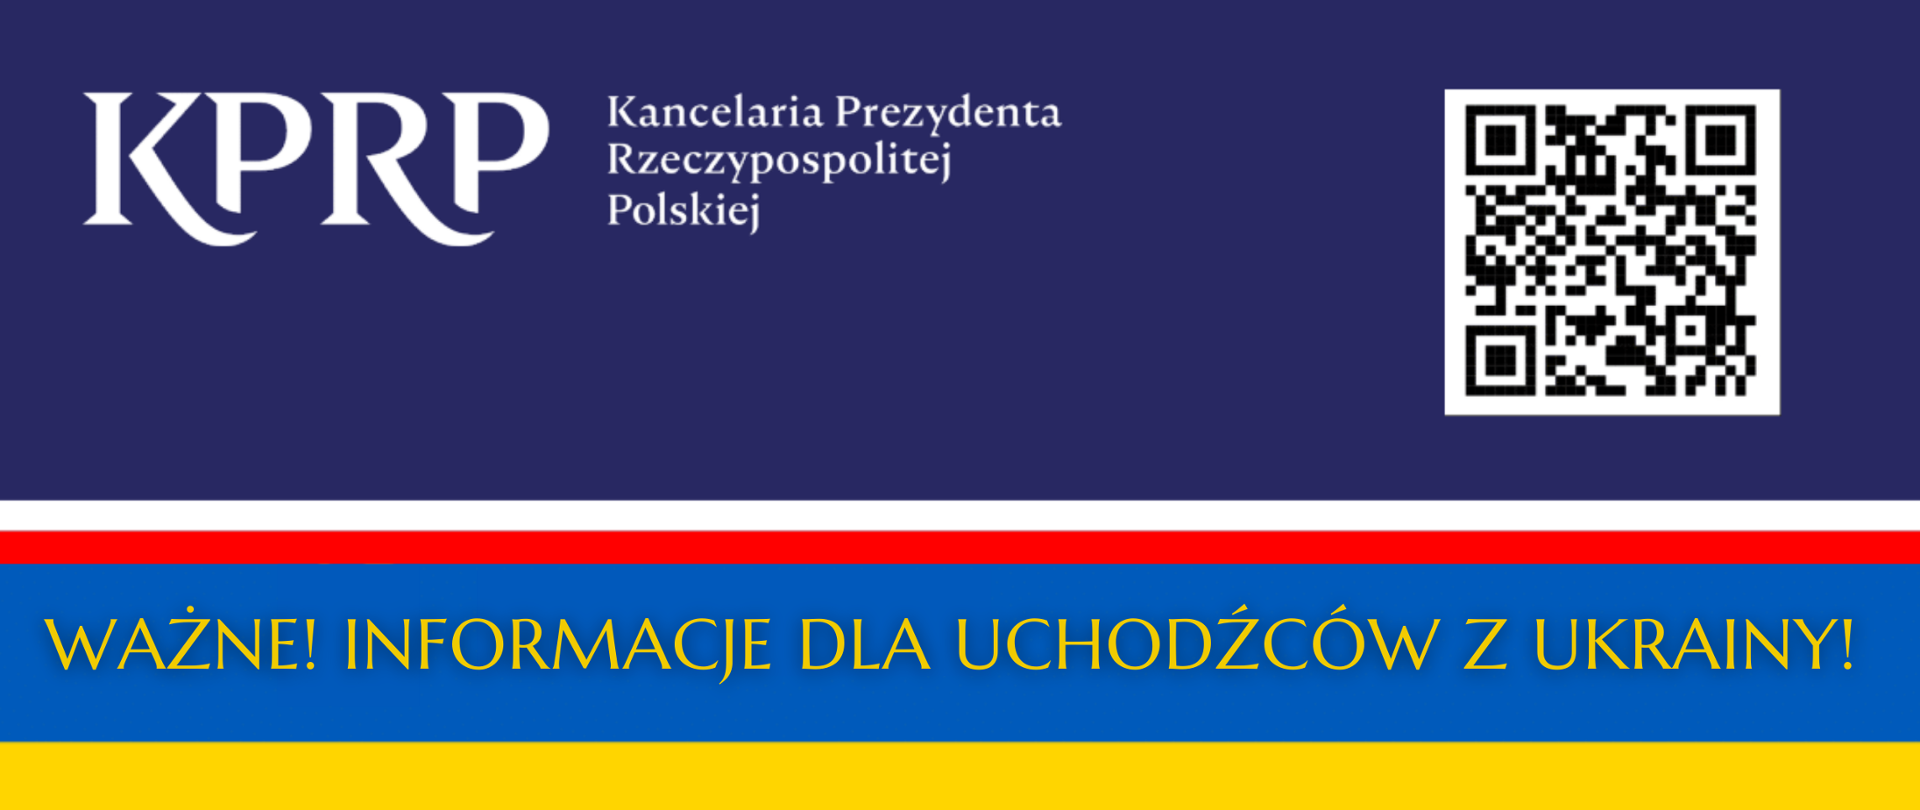 Grafika promująca ważne informacje dla uchodźców z Ukrainy przygotowane przez Kancelarię Prezydenta Rzeczypospolitej Polskiej.